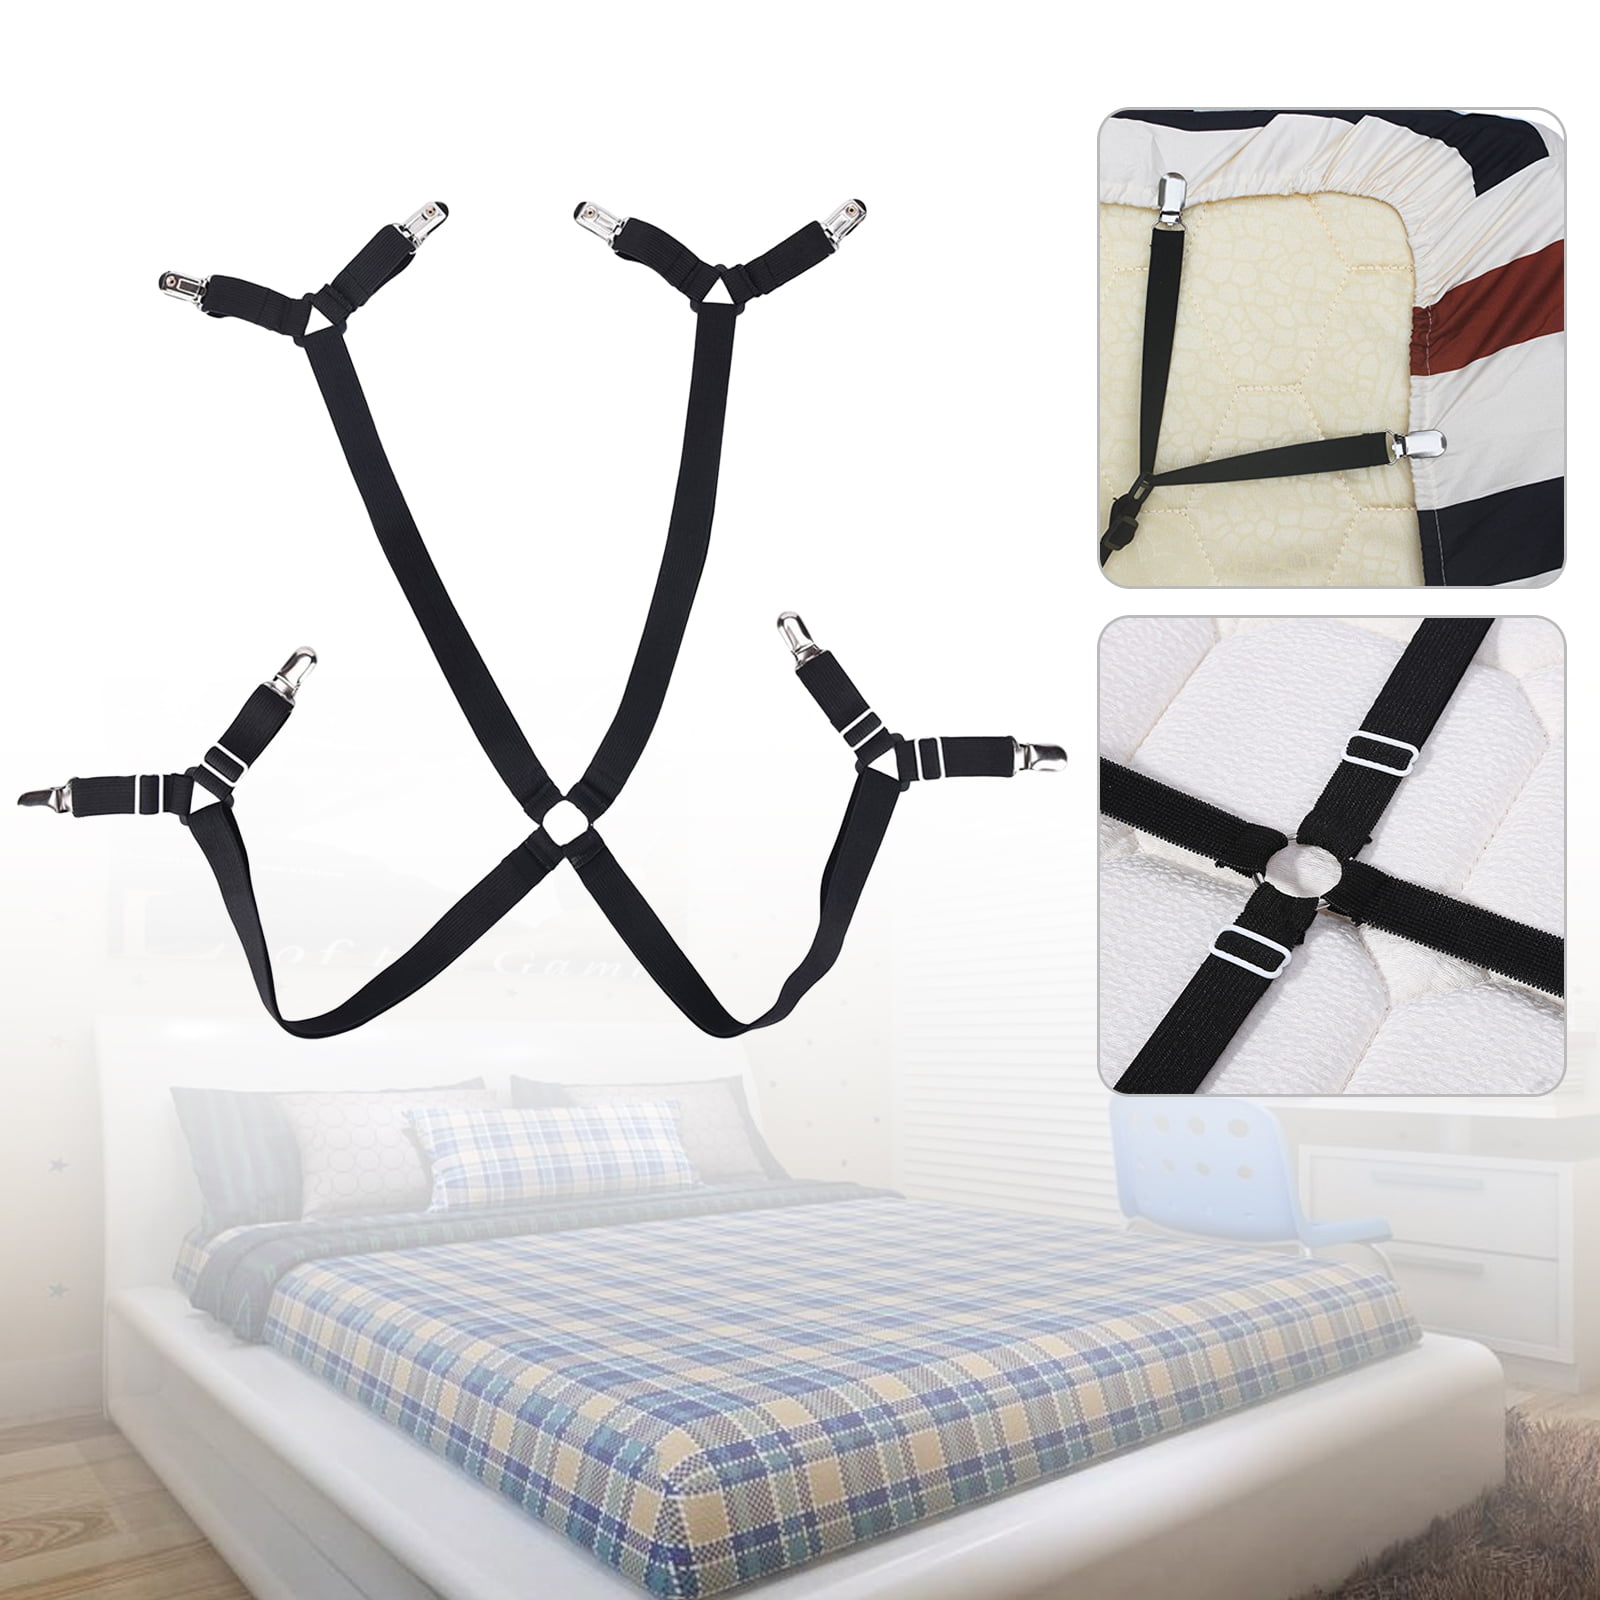 Details about   4Pcs Bed Sheet Clamp Adjustable Elastic Non-Slip Clip Belt Fastener Bedding A HG 